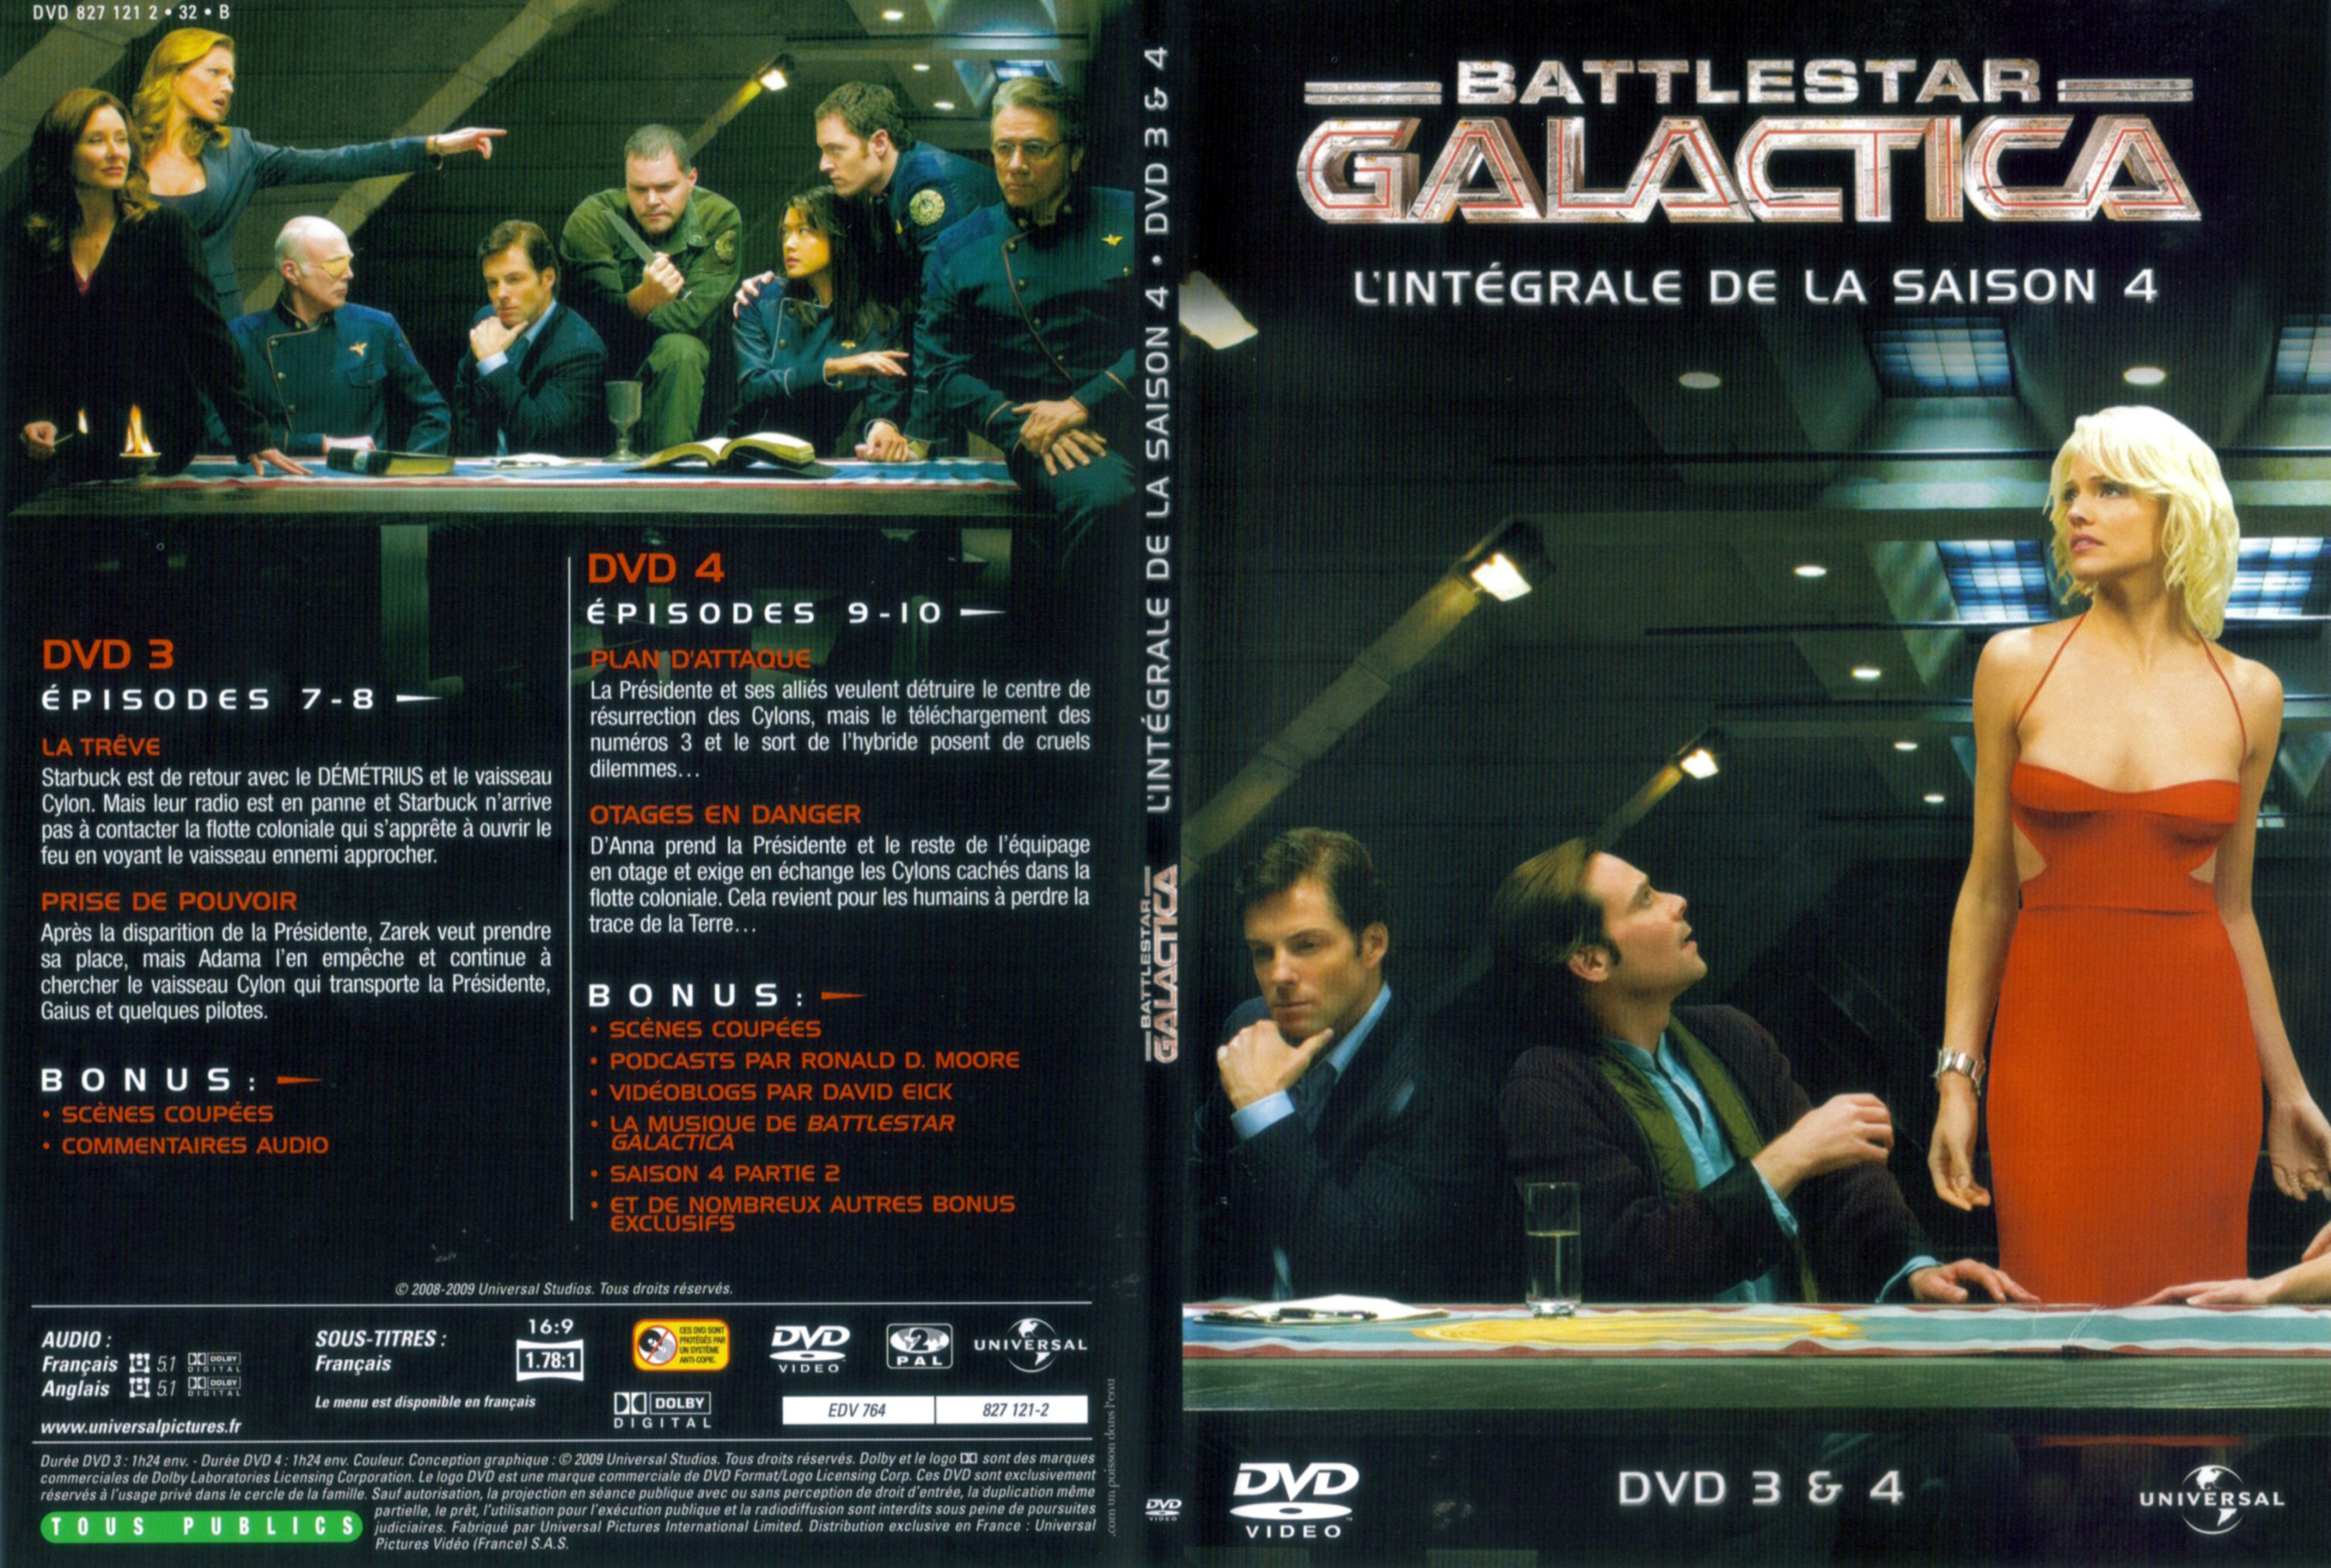 Jaquette DVD Battlestar Galactica Saison 4 DVD 2